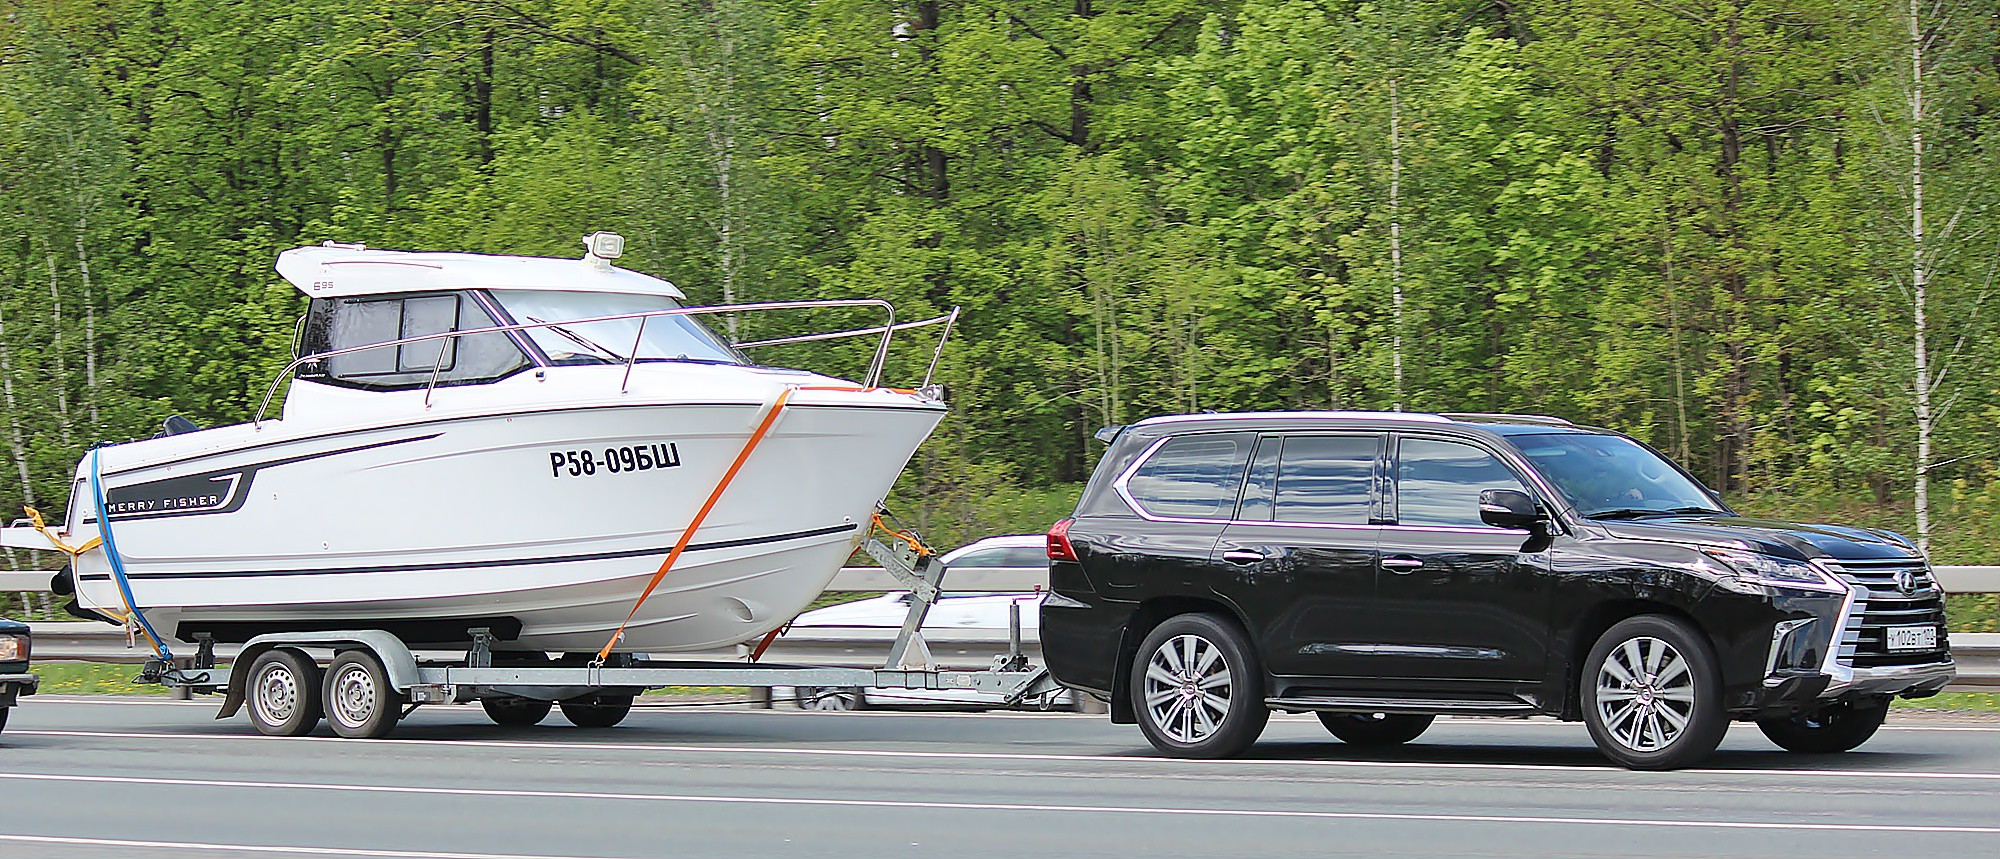 Перевозка лодки пвх с мотором на прицепе: правила и требования безопасности. лодочный прицеп